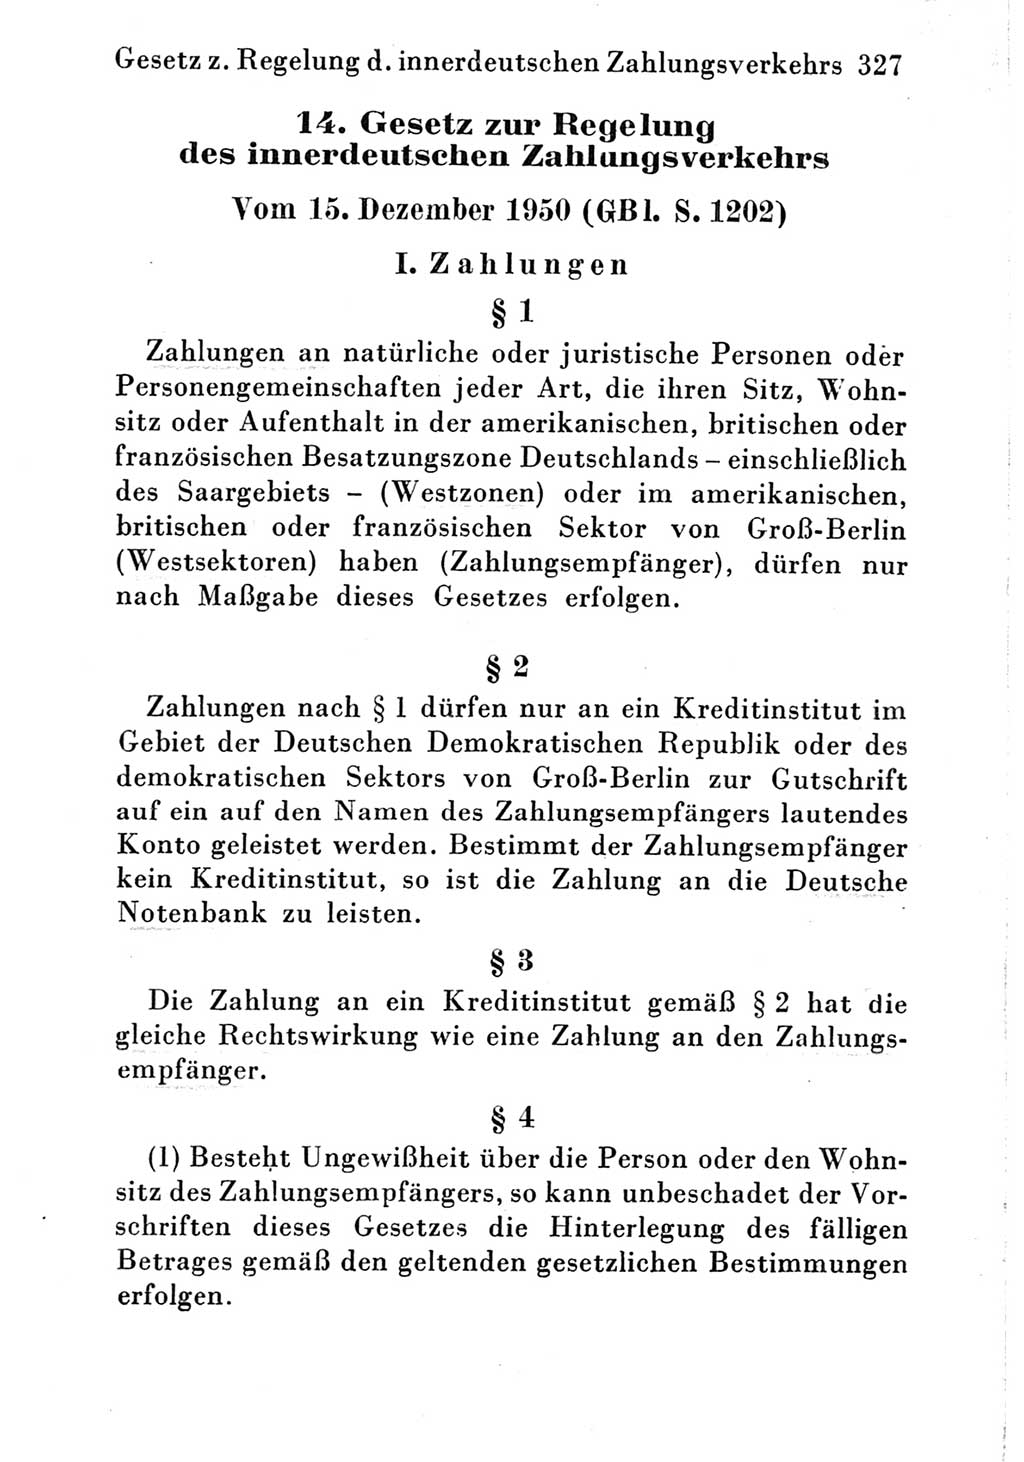 Strafgesetzbuch (StGB) und andere Strafgesetze [Deutsche Demokratische Republik (DDR)] 1951, Seite 327 (StGB Strafges. DDR 1951, S. 327)